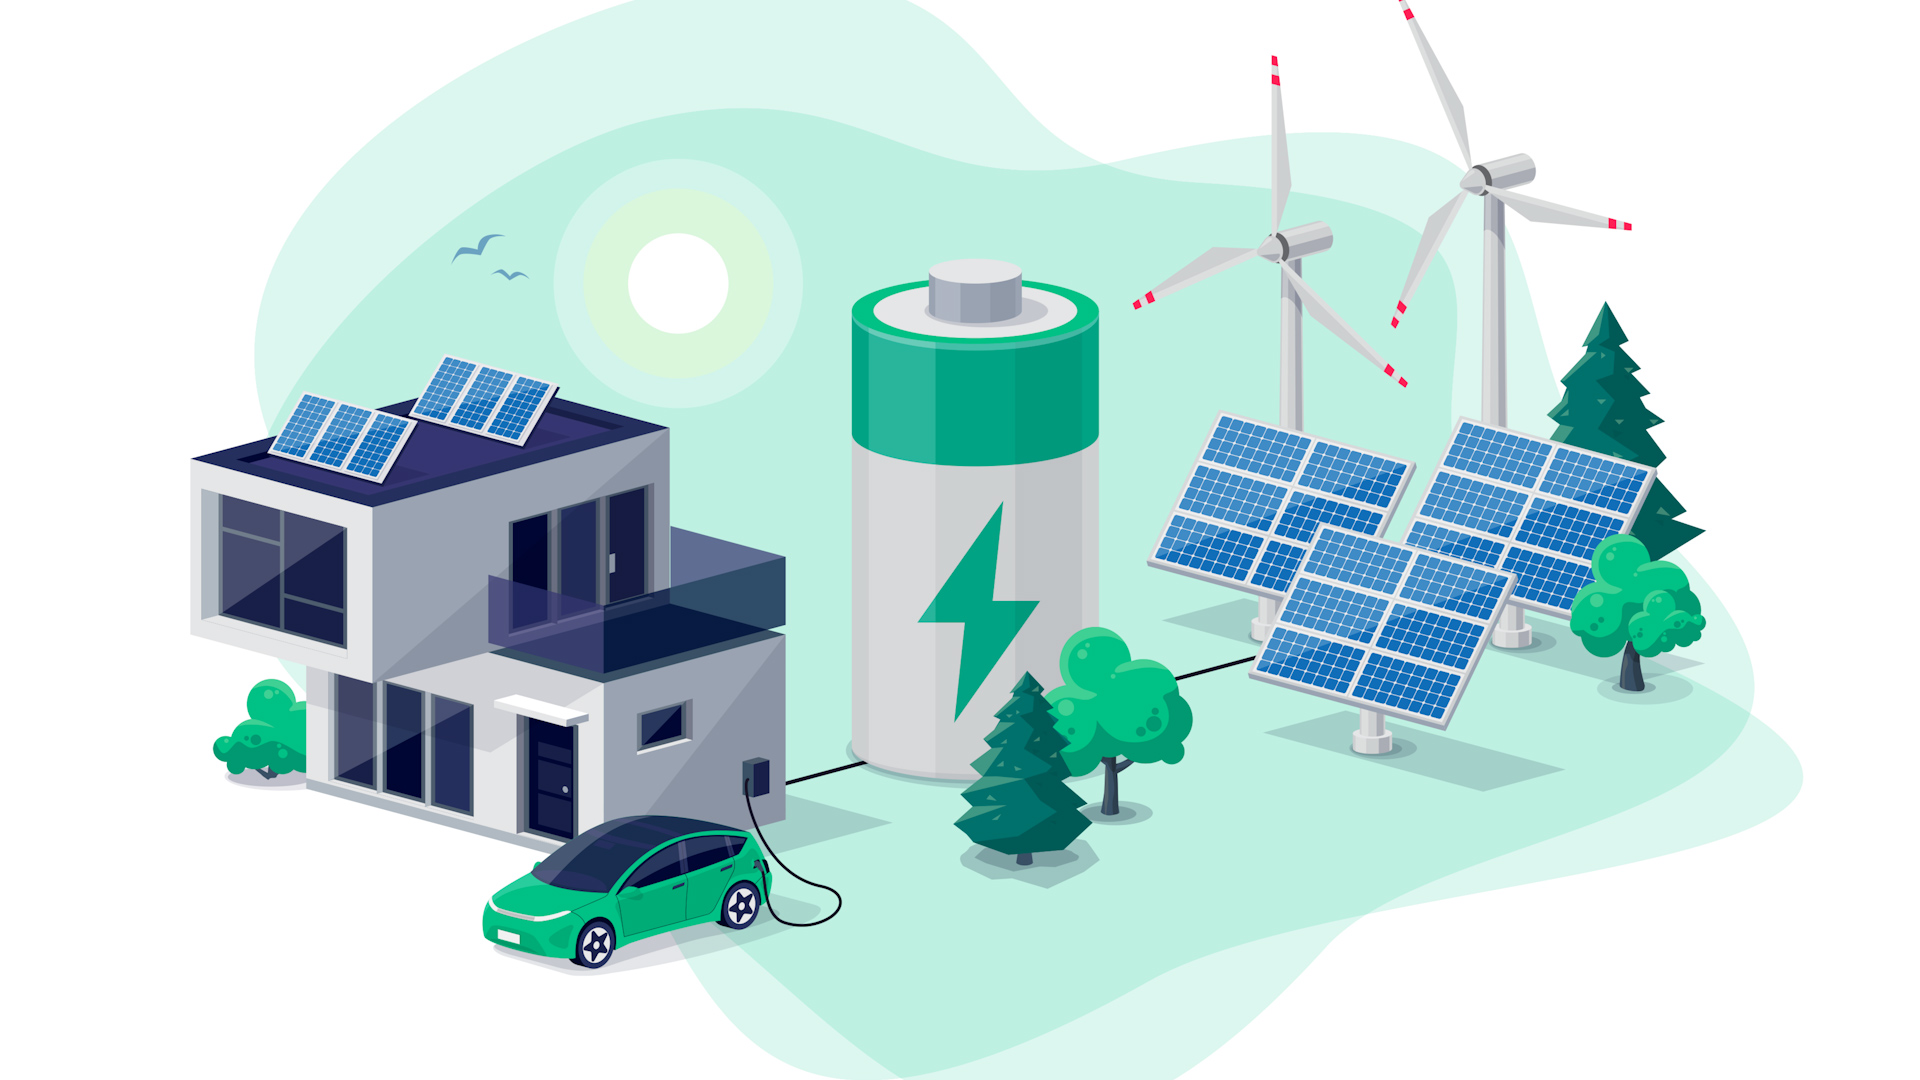 余剰電力を効率よく蓄電できるバナジウム固体電池